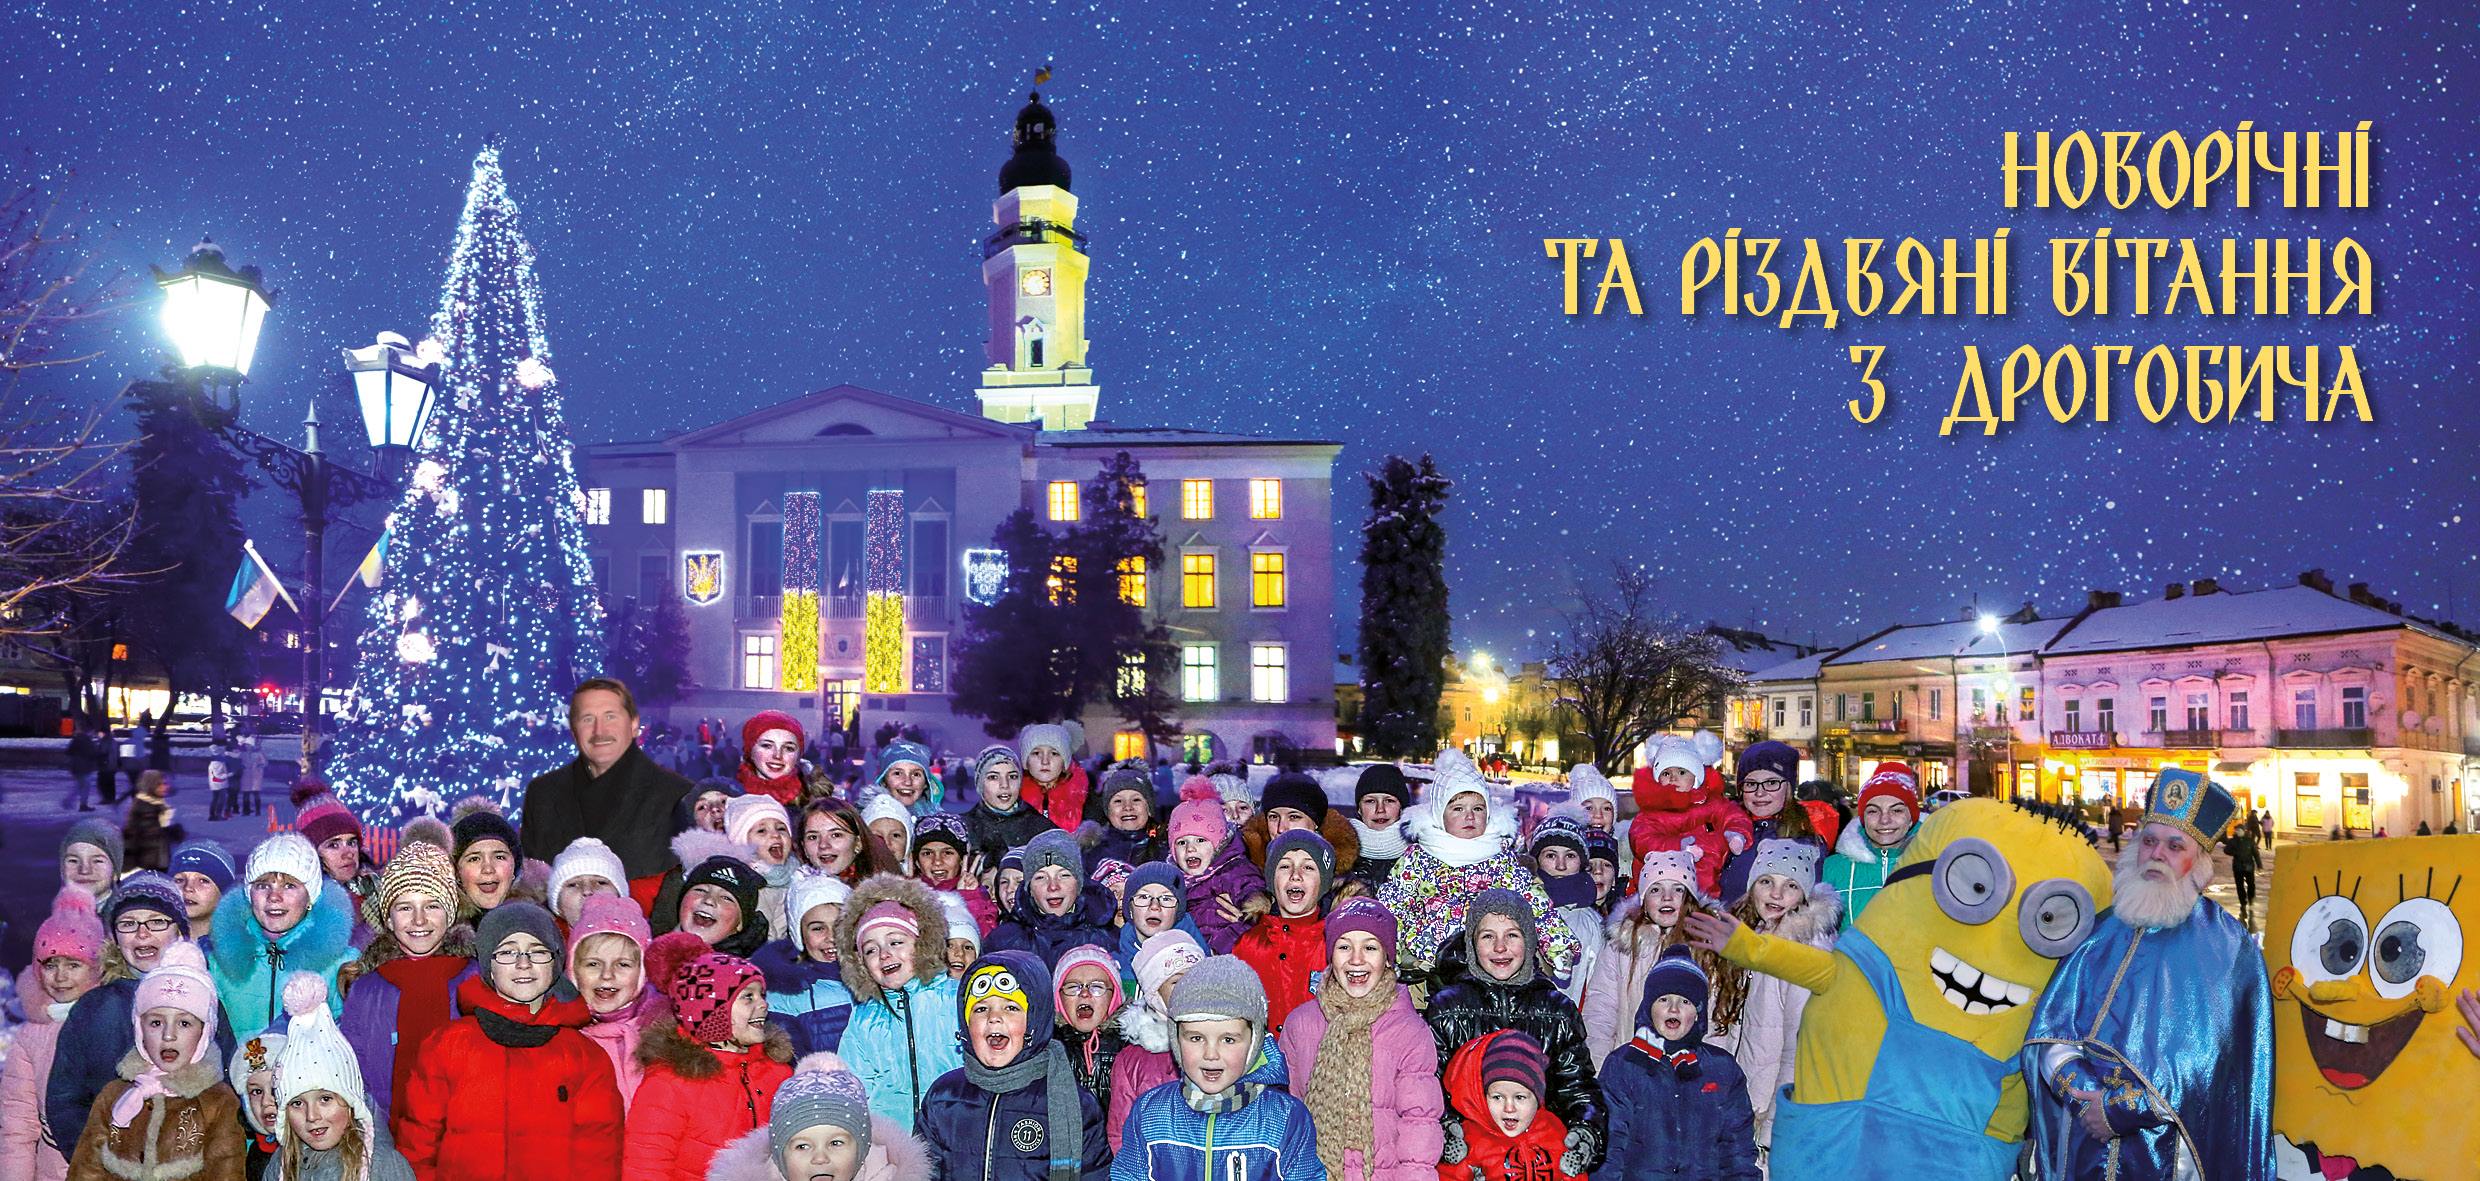 Привітання міського голови Тараса Кучми з Новорічно-Різдвяними святами